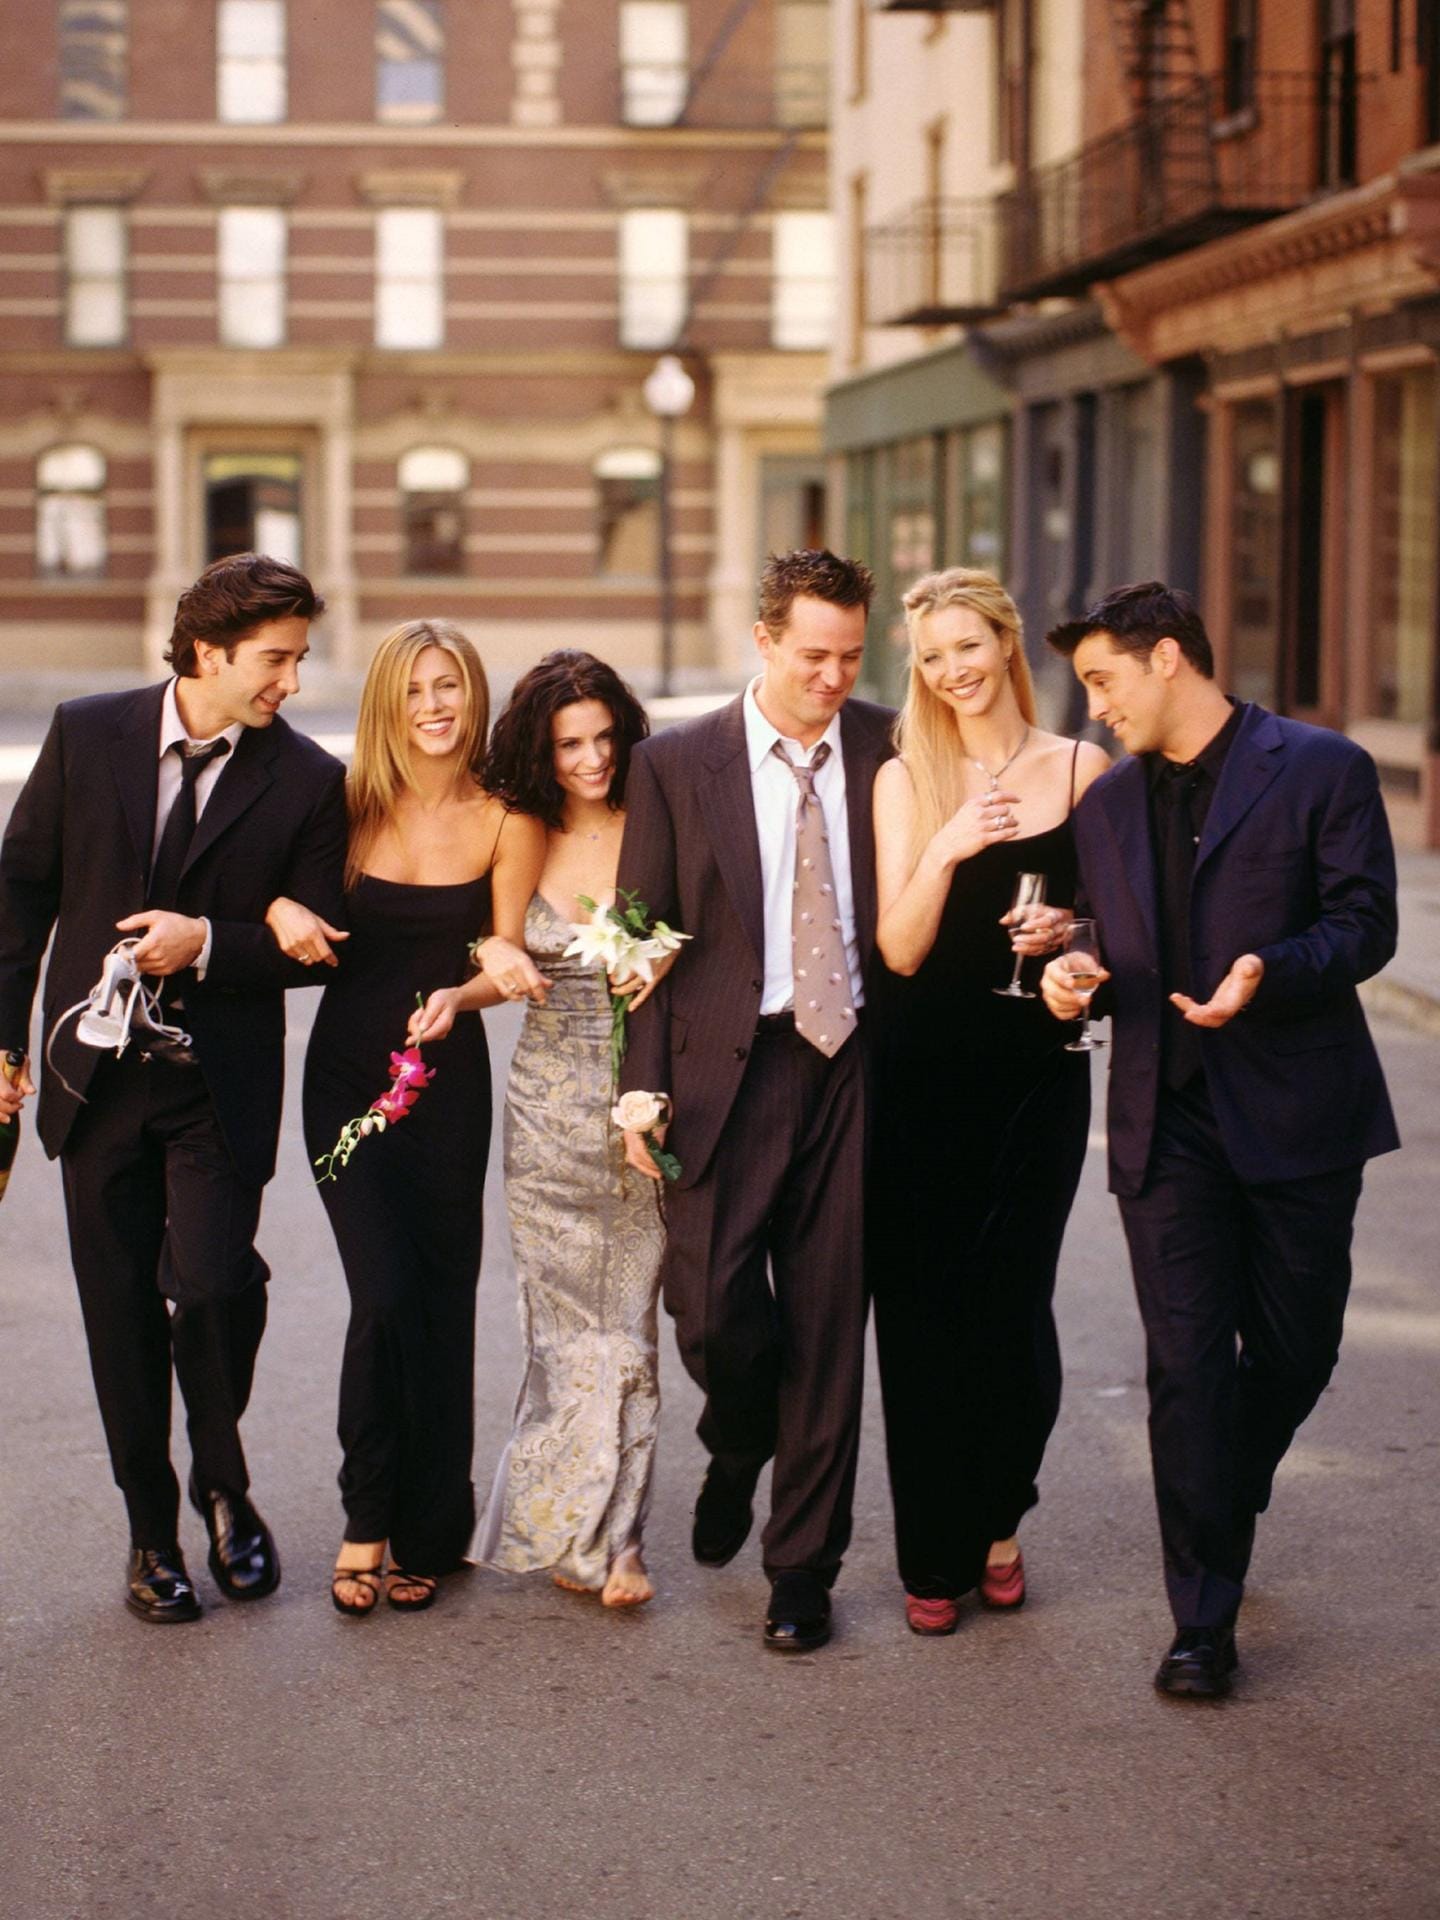 Am 22. September 1994 lief die erste Folge von "Friends".